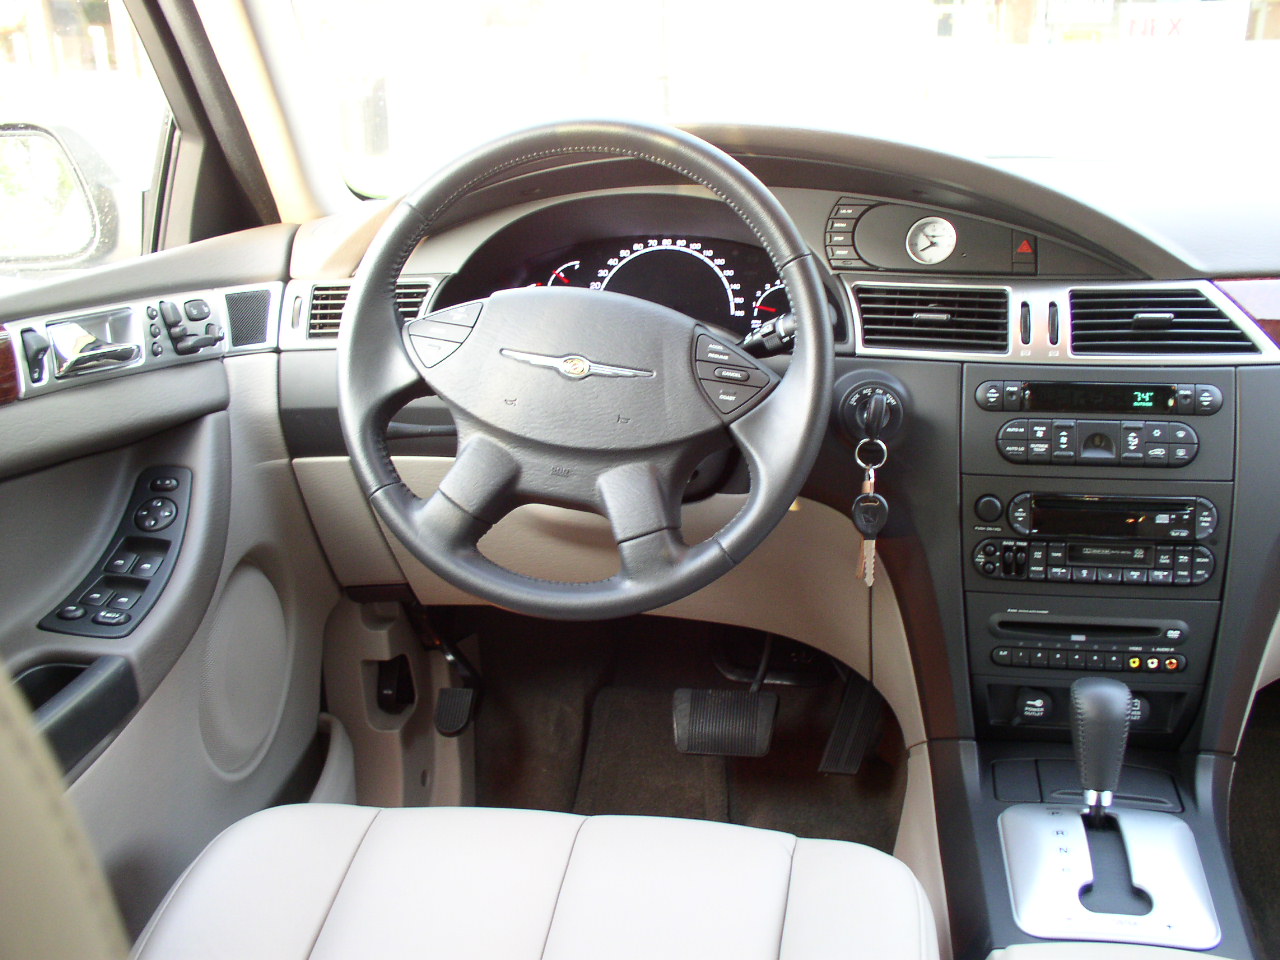 2005 Chrysler pacifica interior